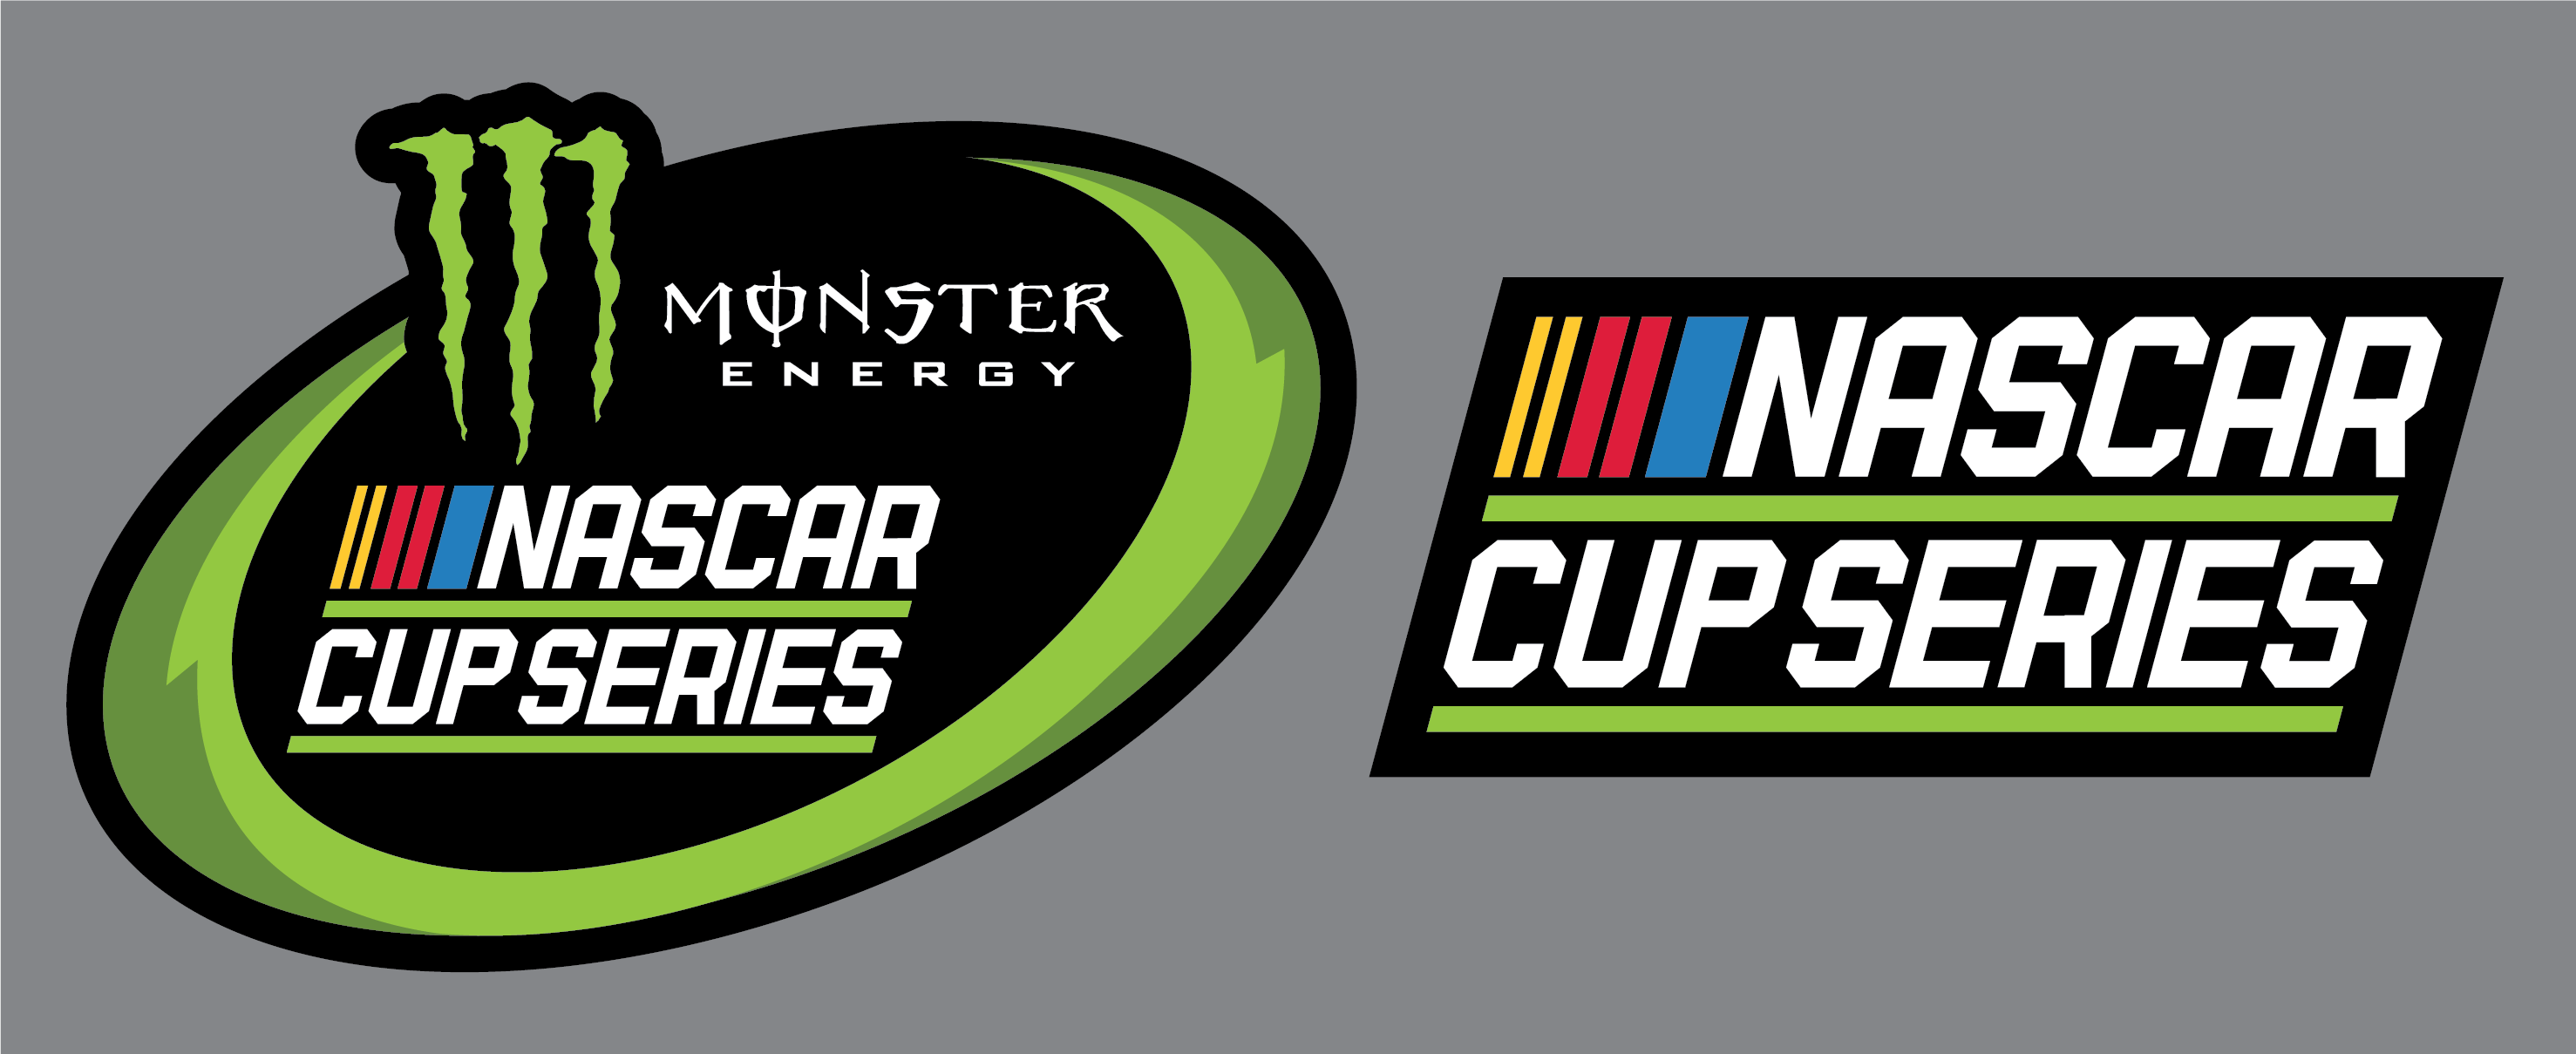 NASCAR On ESPN Logo - New NASCAR and Cup Series logos Logos Creamer's